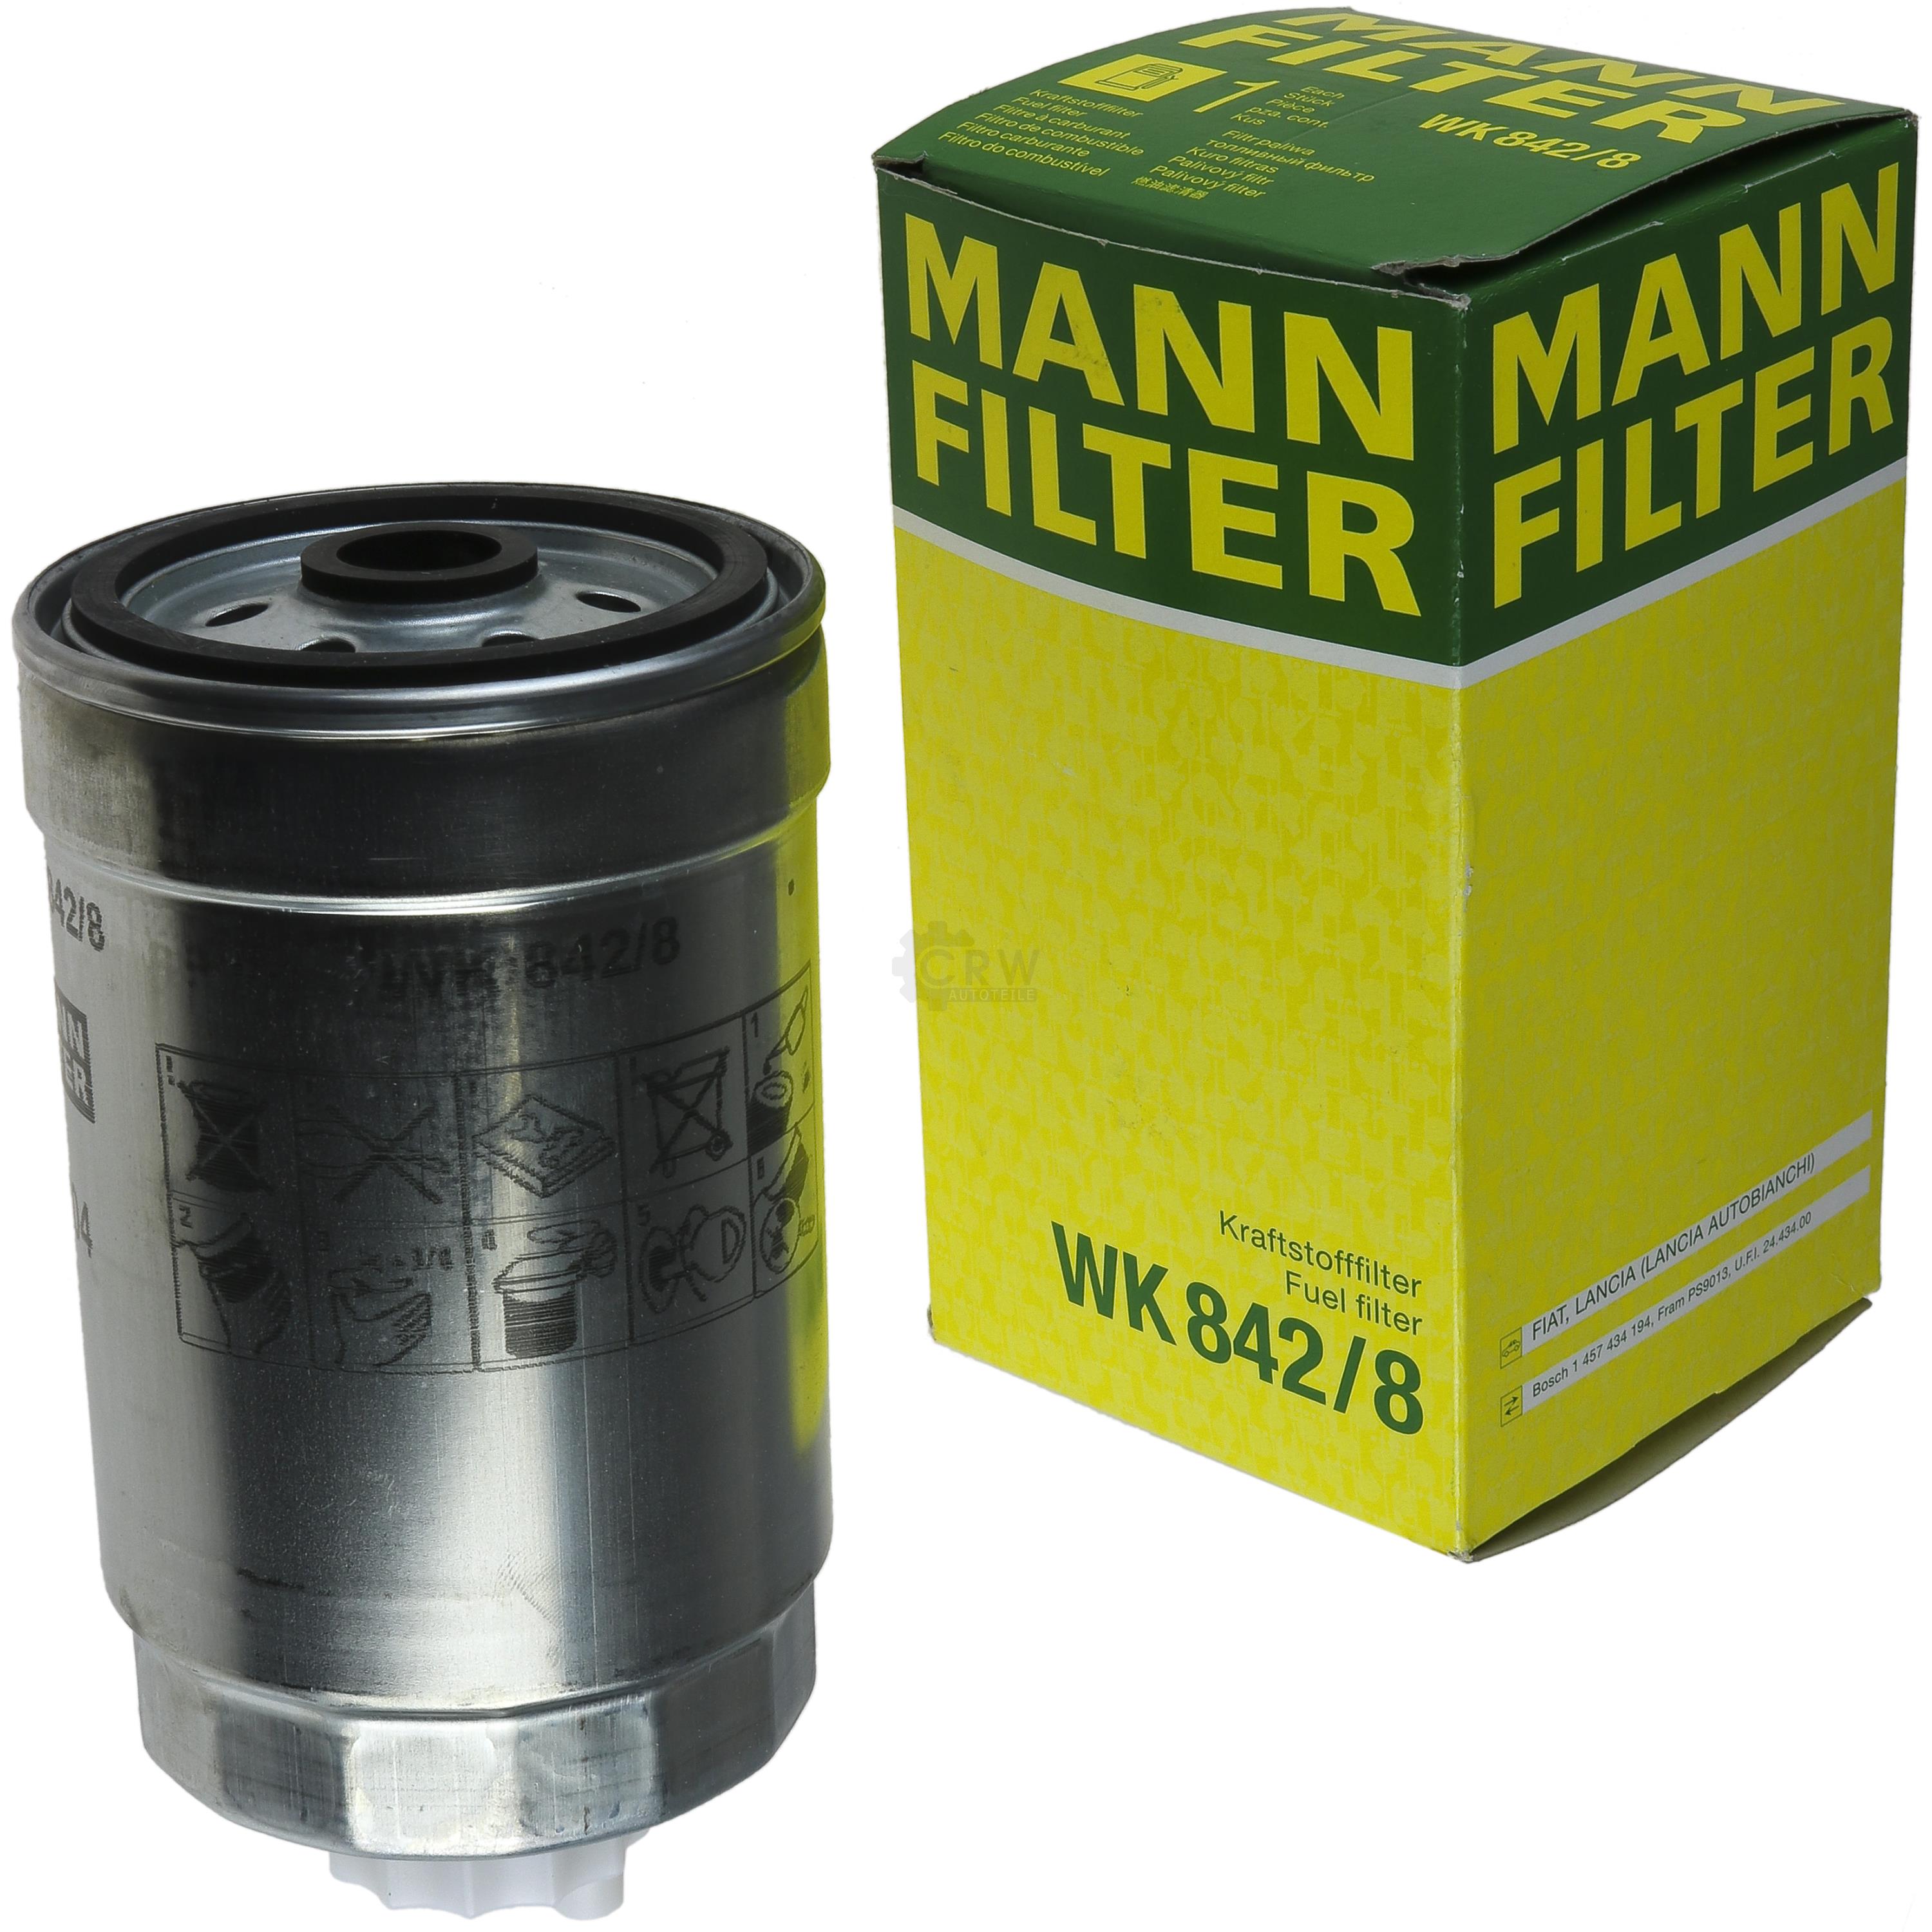 MANN-FILTER Kraftstofffilter WK 842/8 Fuel Filter